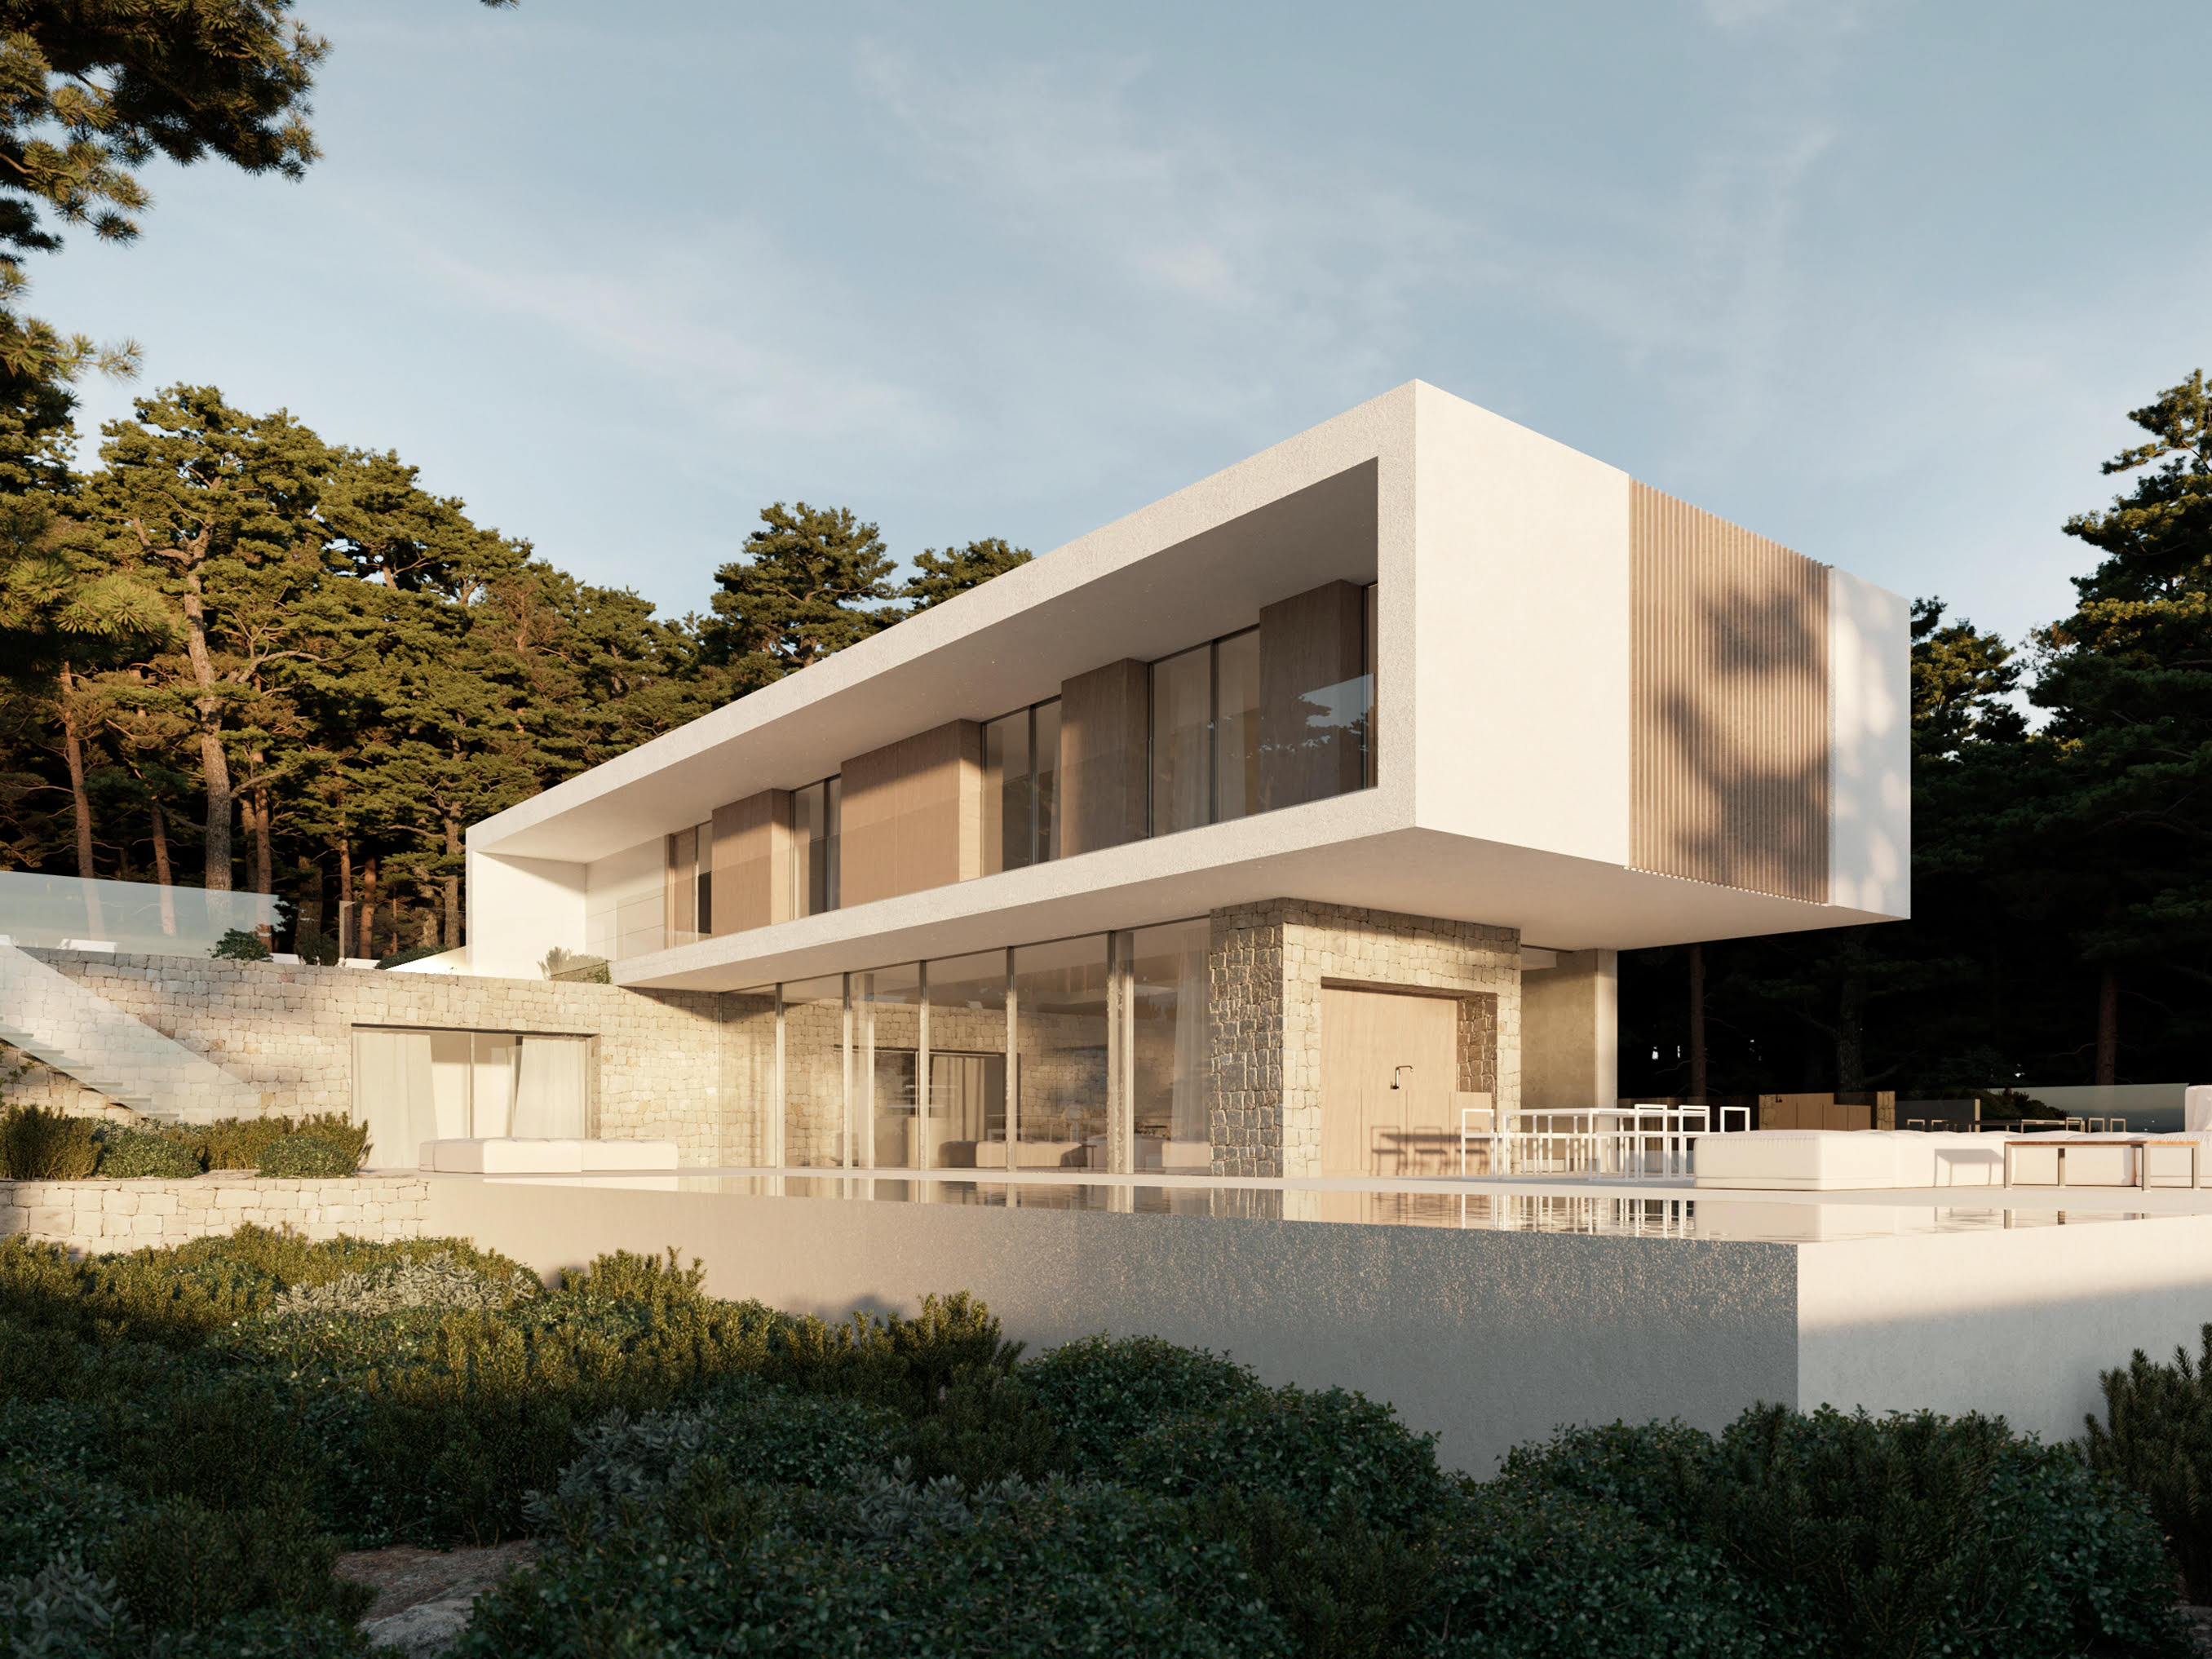 villa en moraira-teulada ·  1595000€